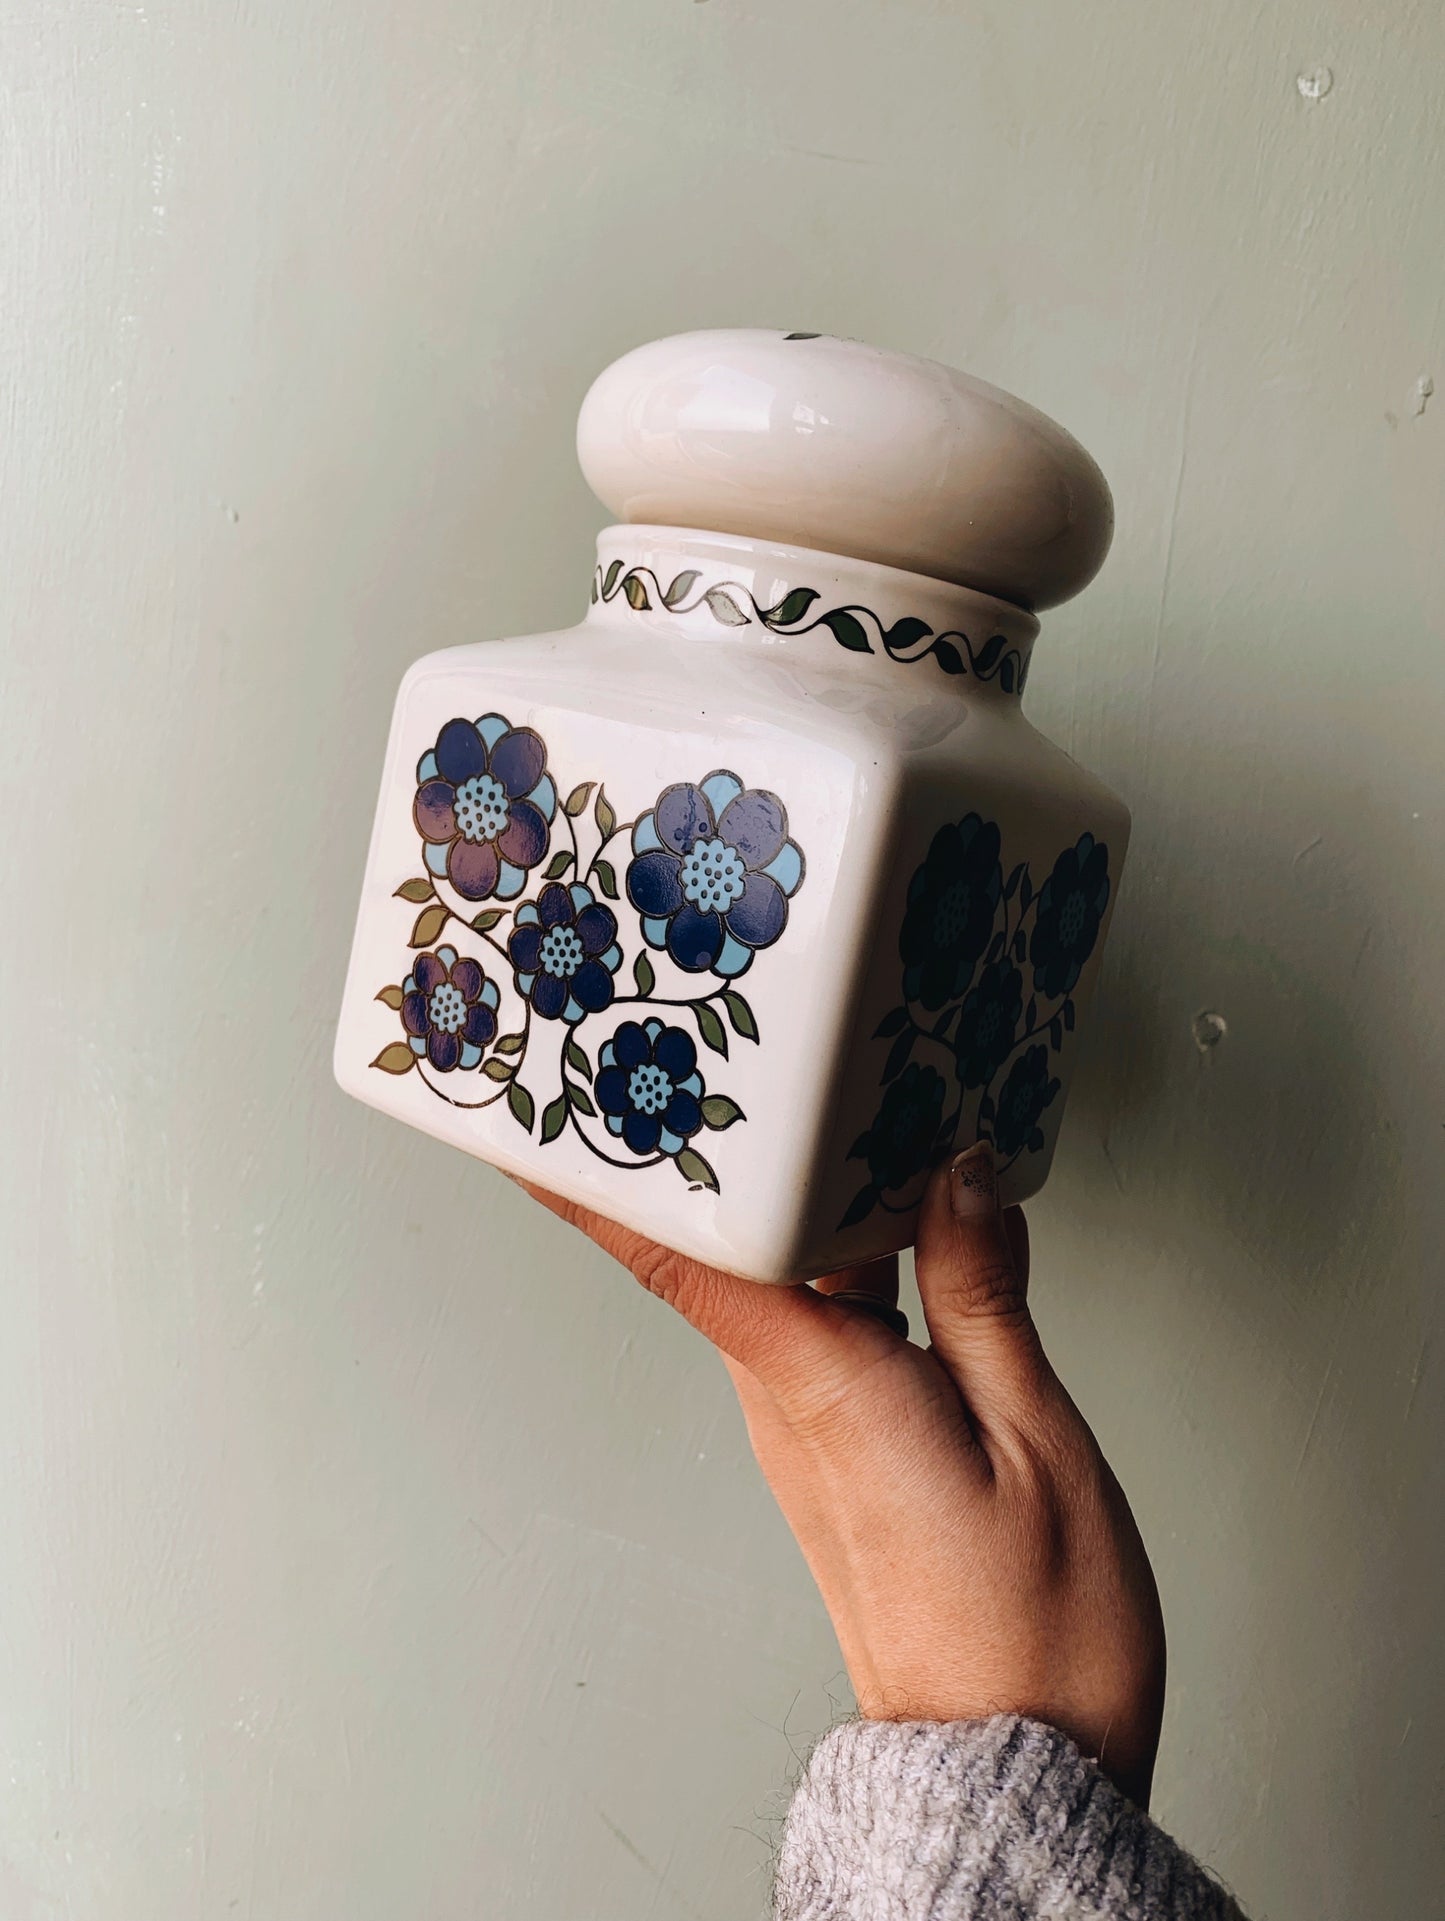 Retro 1970’s Taunton Blue Floral Ceramic Storage Jar